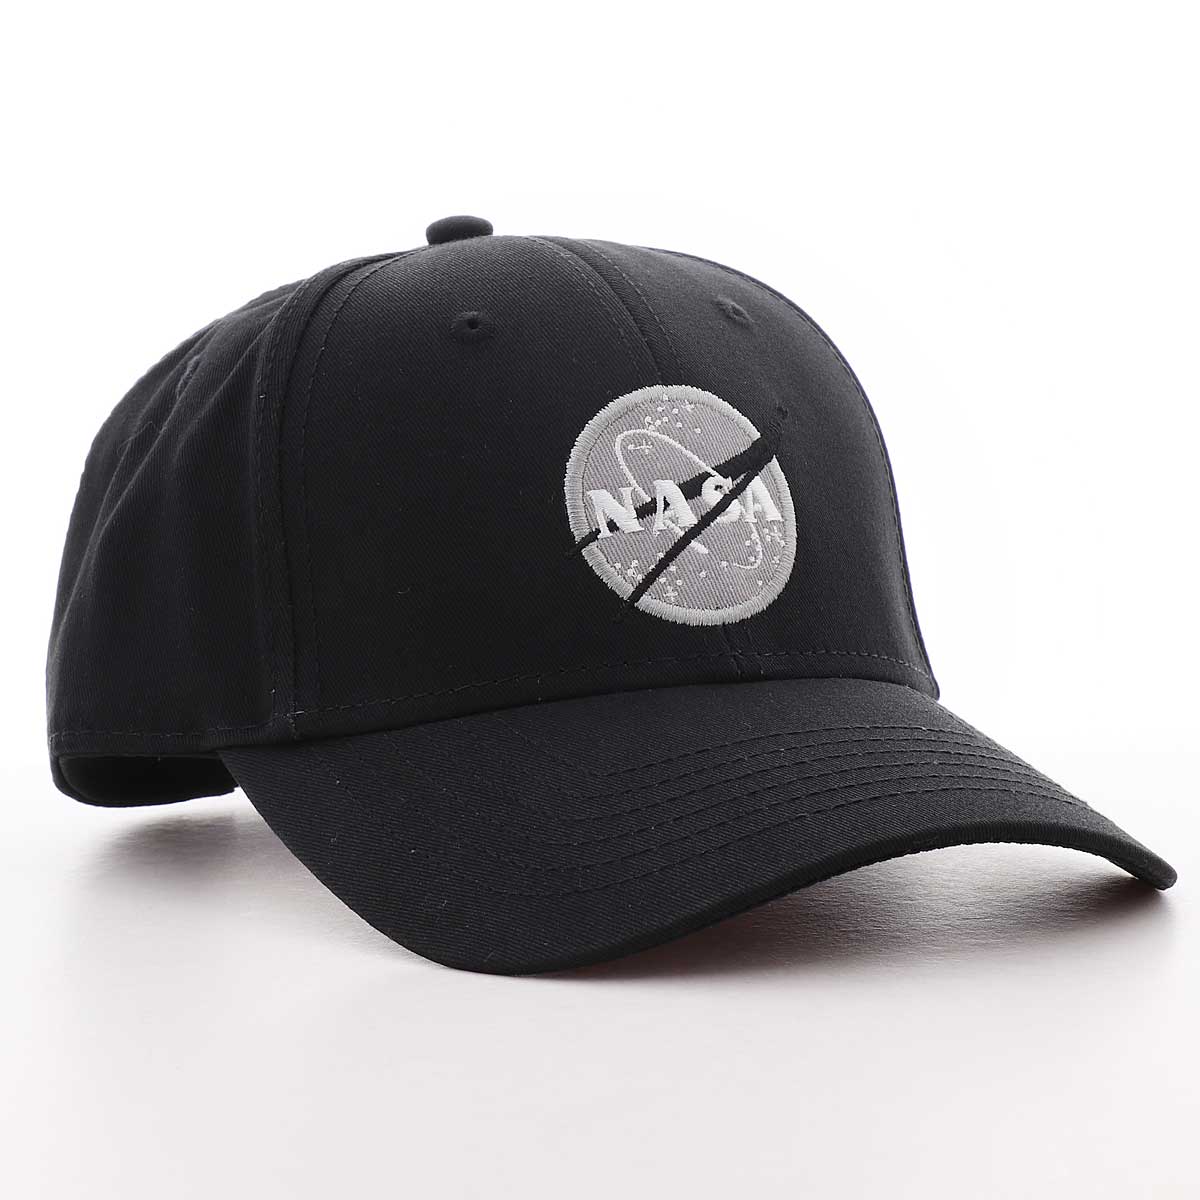 čepice NASA CAP black